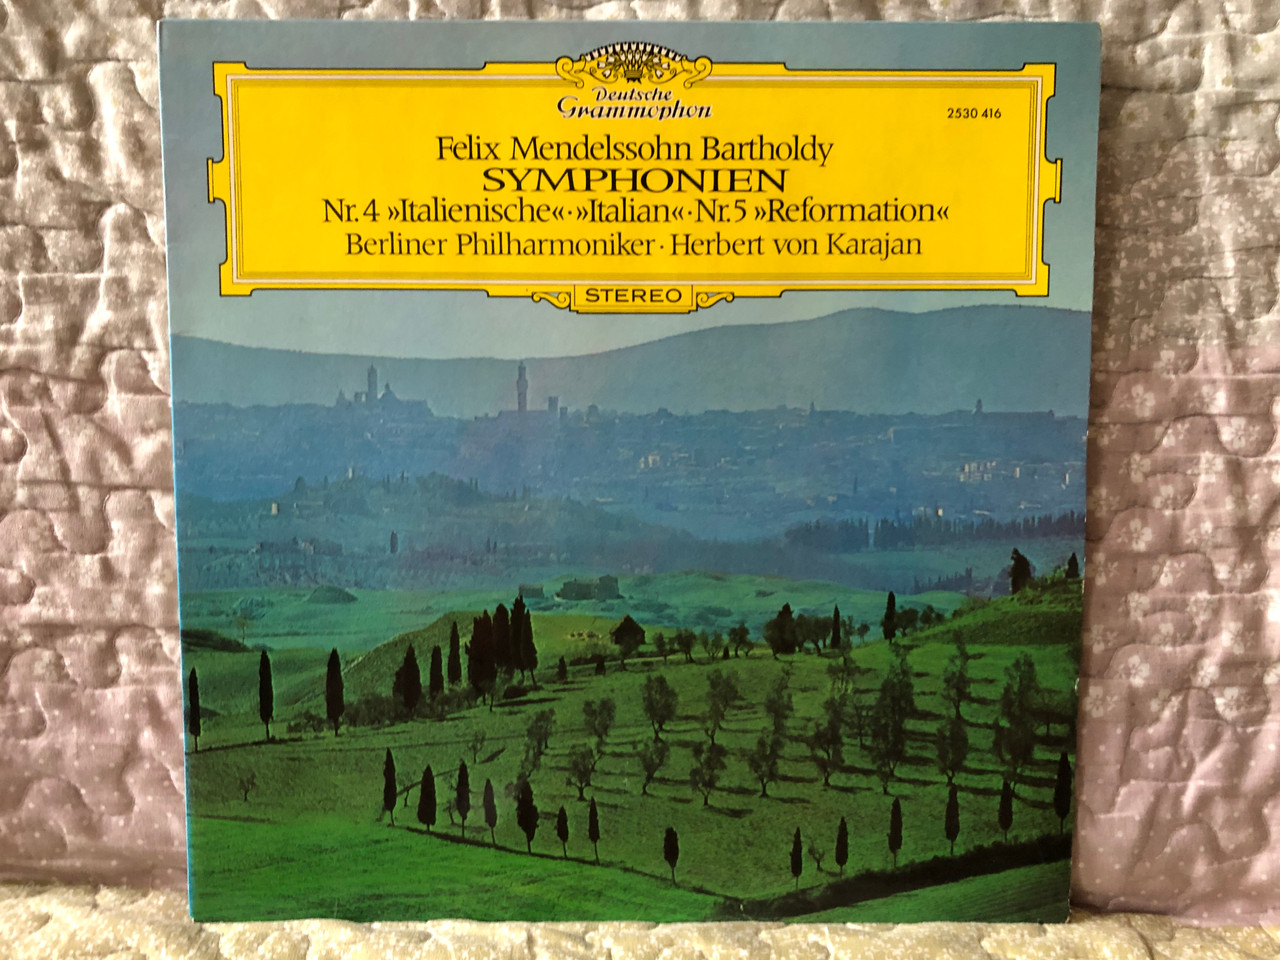 https://cdn10.bigcommerce.com/s-62bdpkt7pb/products/0/images/280227/Felix_Mendelssohn_Bartholdy_-_Symphonien_Nr._4_Italienische_Italian_Nr._5_Reformation_-_Berliner_Philharmoniker_Herbert_von_Karajan_Deutsche_Grammophon_LP_Stereo_1973_2530_416_1__63109.1688105159.1280.1280.JPG?c=2&_gl=1*upb93b*_ga*MjA2NTIxMjE2MC4xNTkwNTEyNTMy*_ga_WS2VZYPC6G*MTY4ODEwMjE4Ny45NzAuMS4xNjg4MTA1MDI2LjU4LjAuMA..